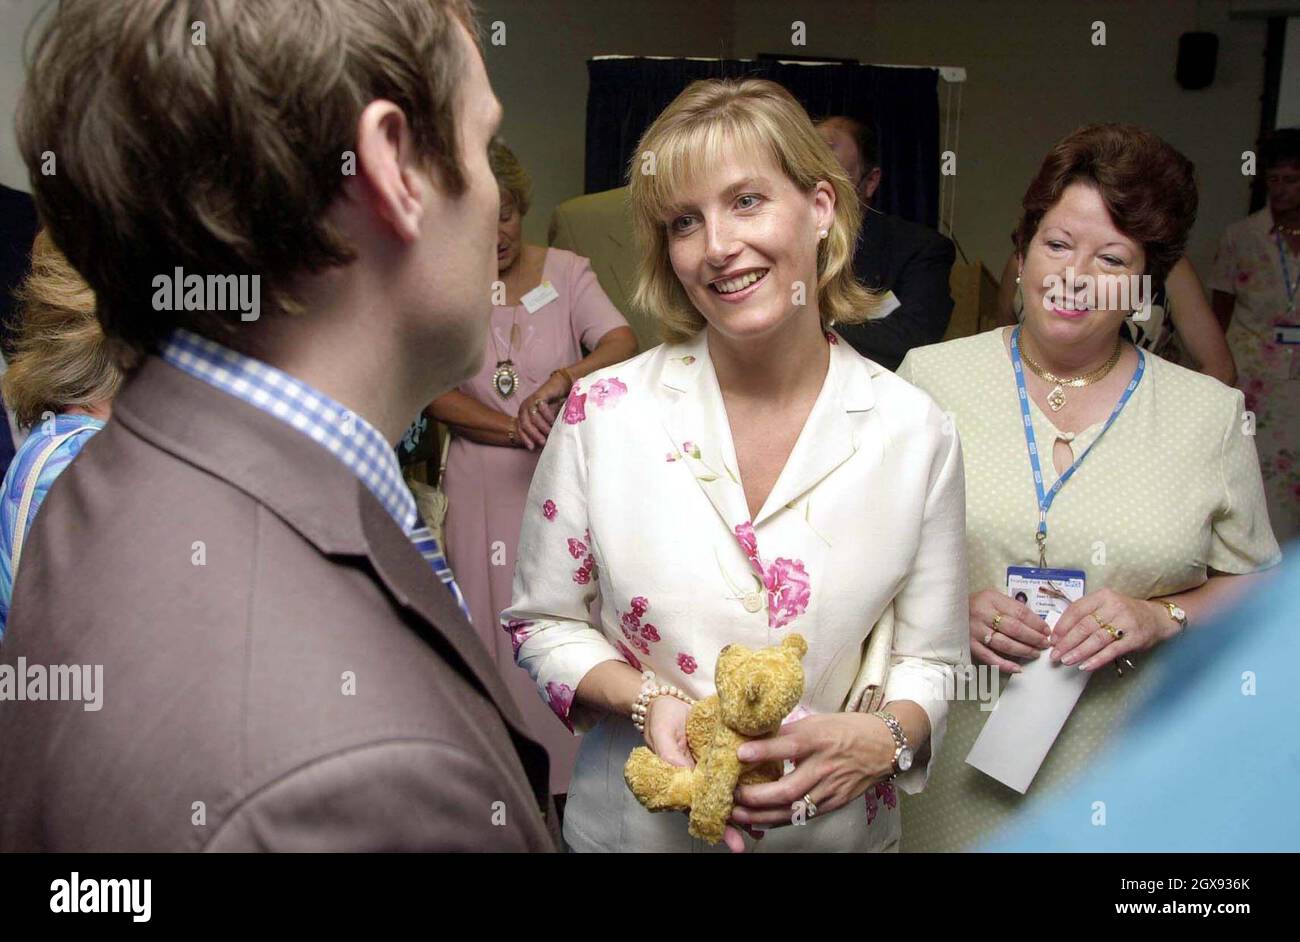 La condesa de Wessex se reúne con nuevas madres en una sala de maternidad en el Hospital Frimley Park de Surrey. Foto de stock